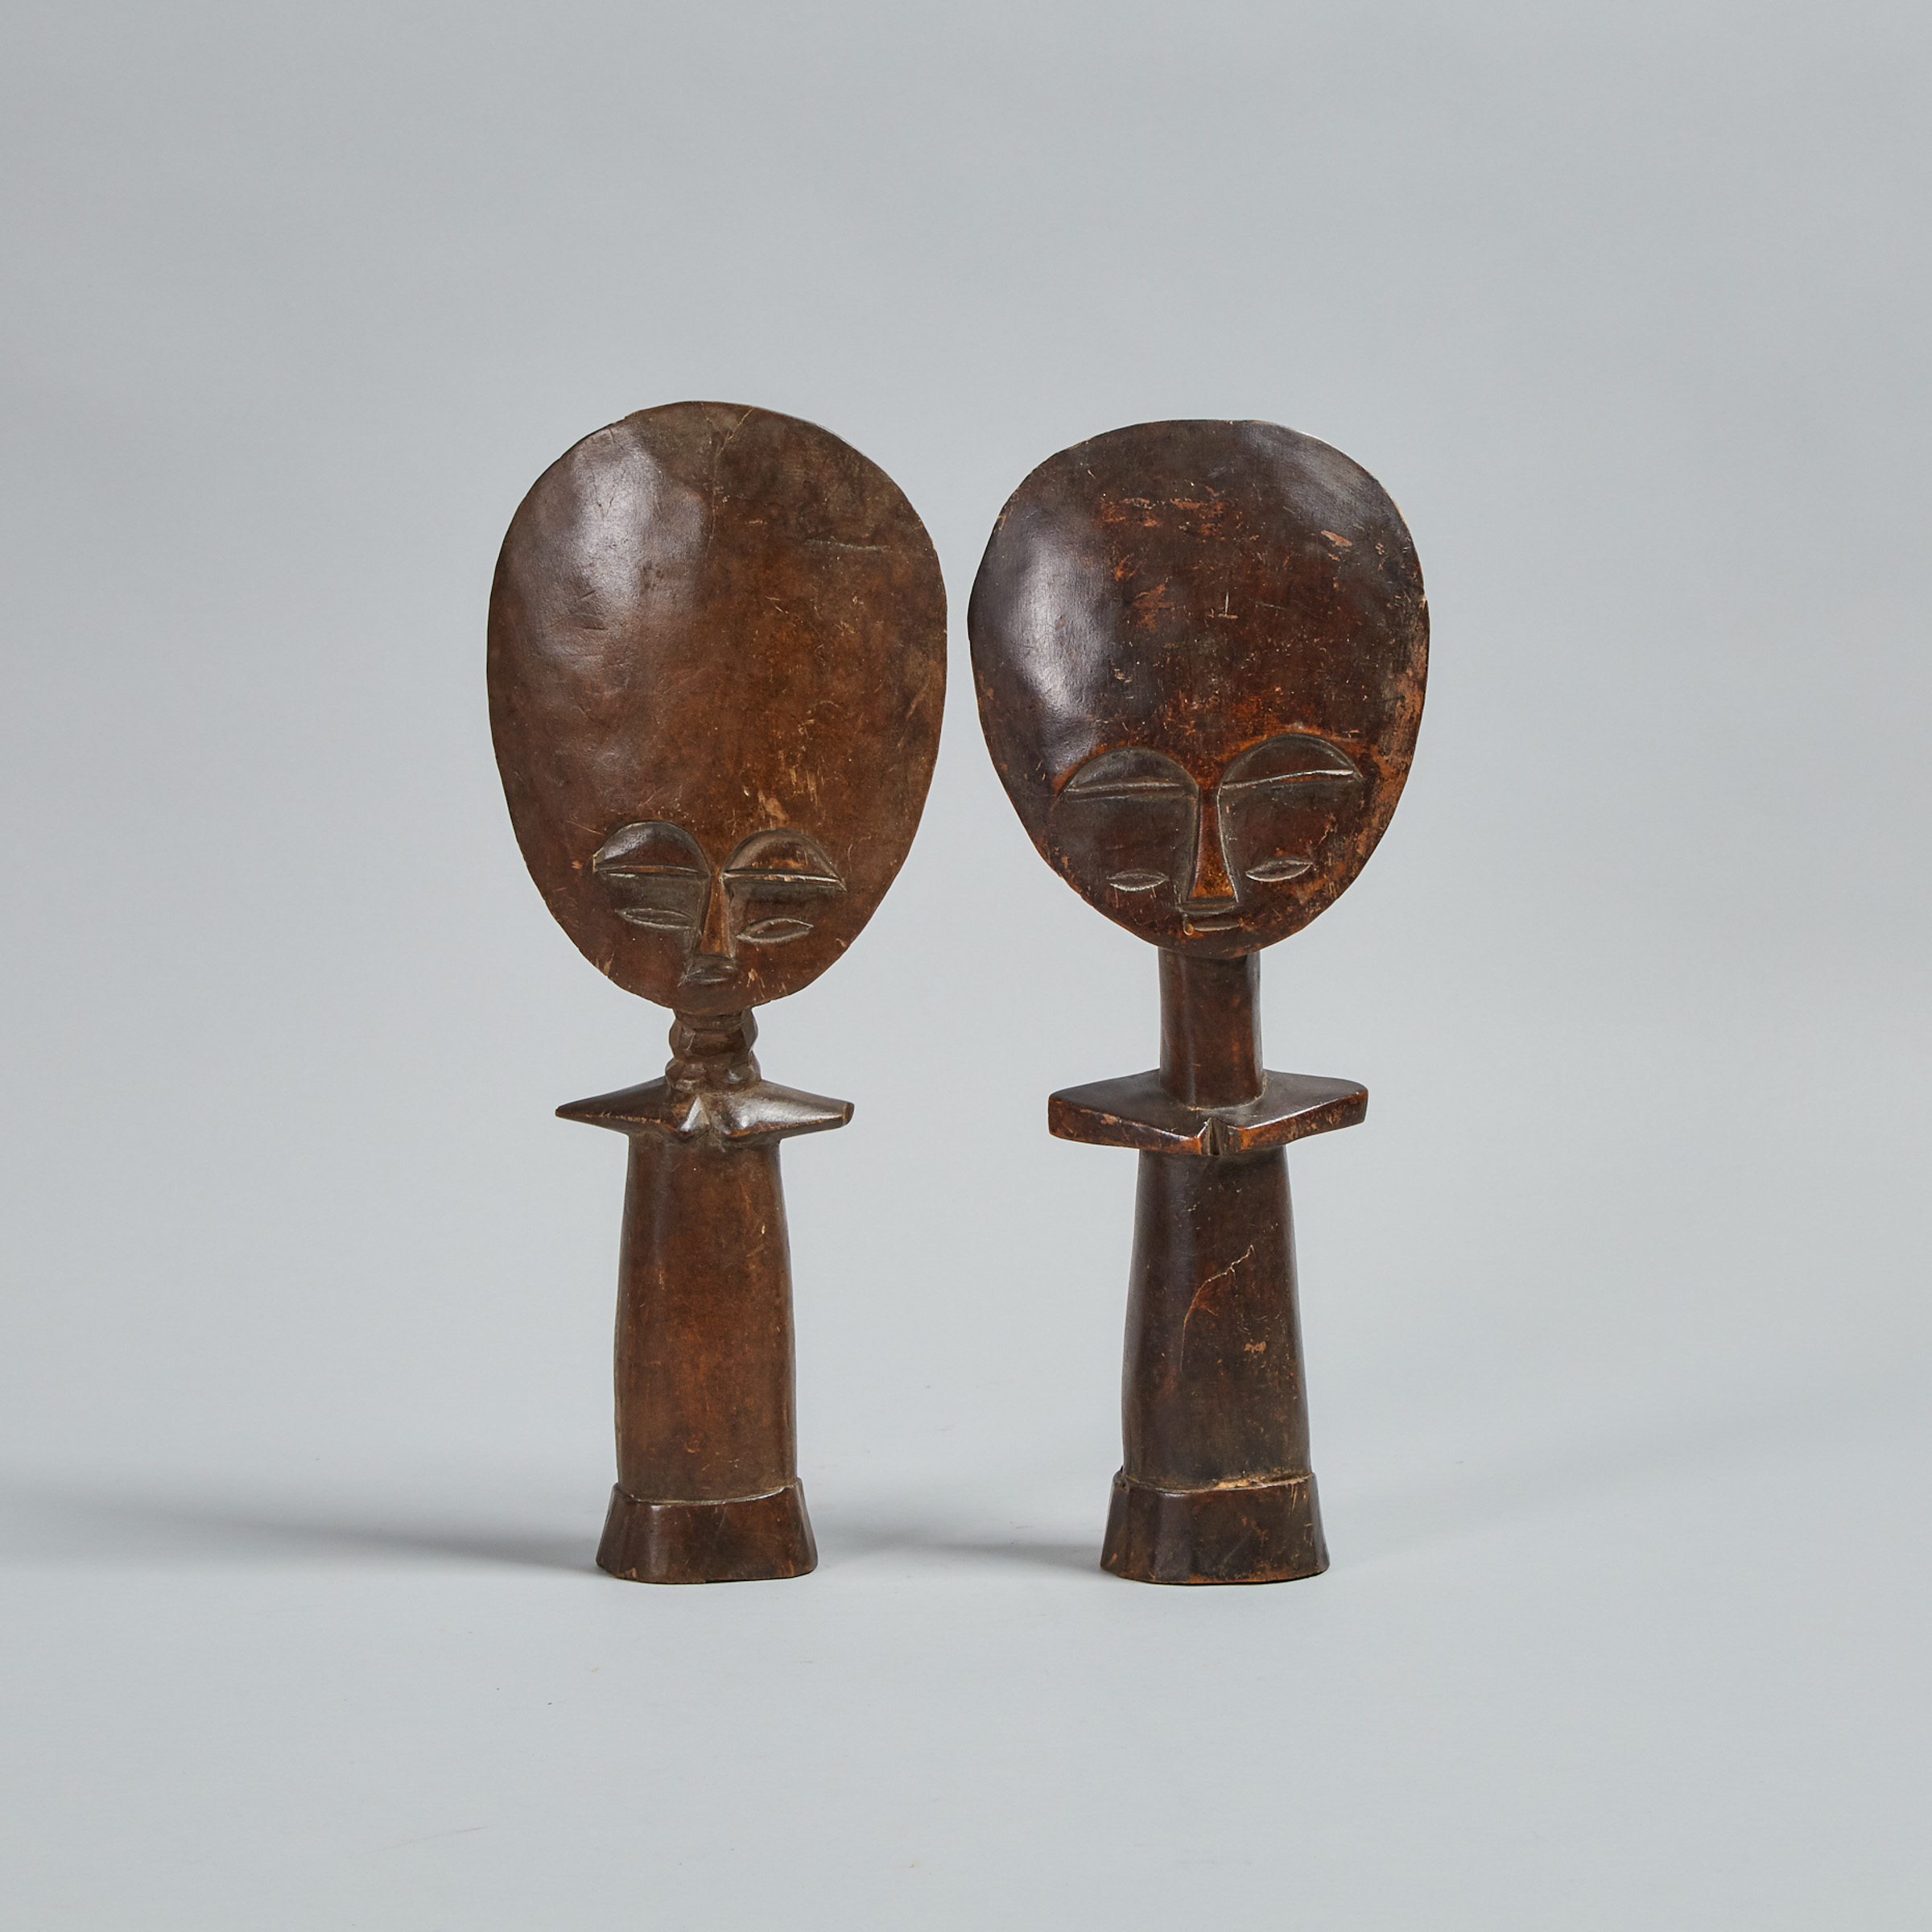 Two Ashanti Akuaba (fertiliy) Dolls, Ghana, West Africa